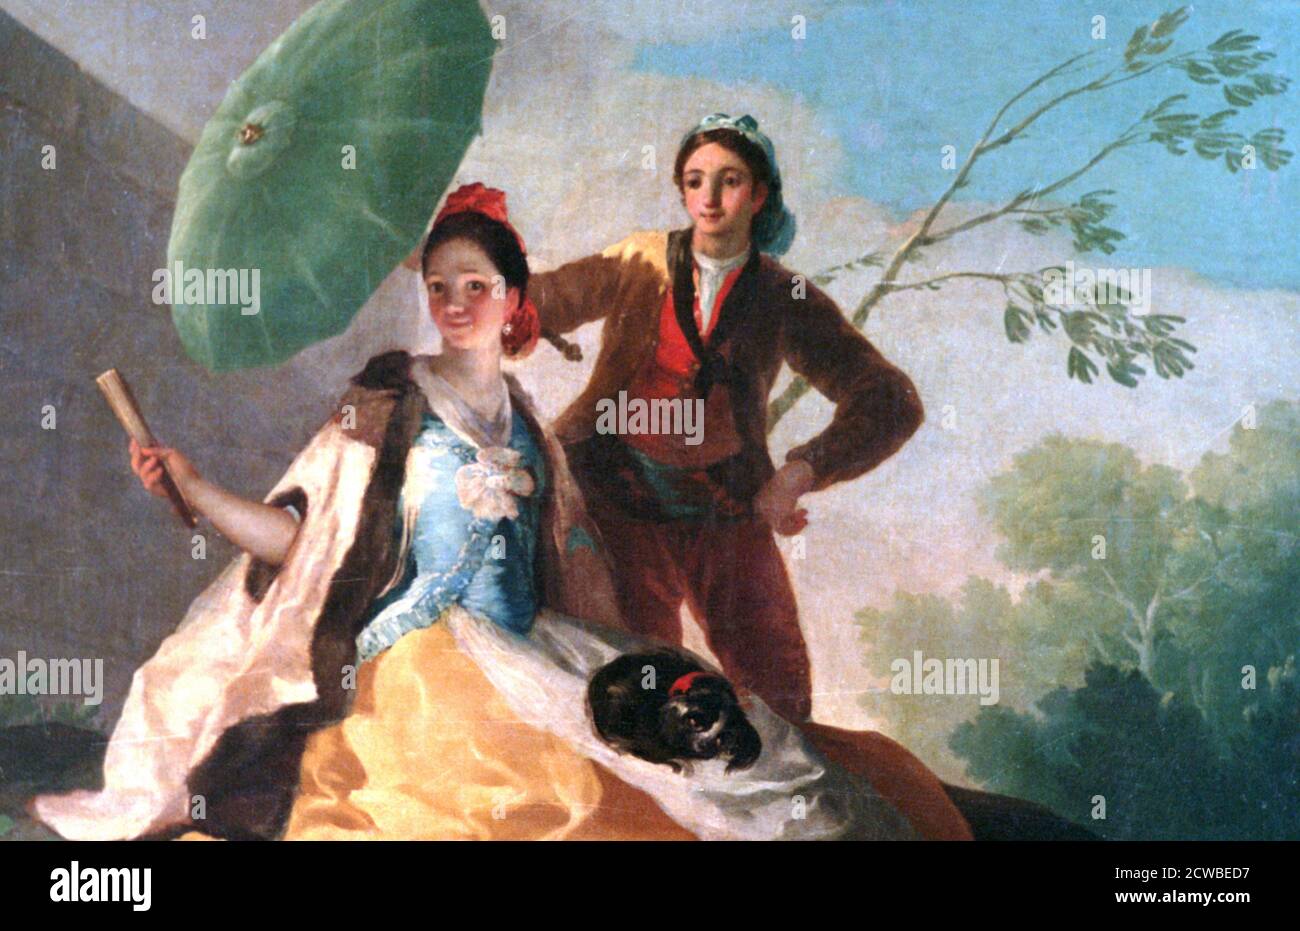 Le parasol, 1777. Artiste: Francisco Goya. Francisco Goya(1746-1828) était un artiste espagnol dont les peintures, dessins et gravures reflétaient des bouleversements historiques contemporains et influençaient d'importants peintres des XIXe et XXe siècles. Banque D'Images